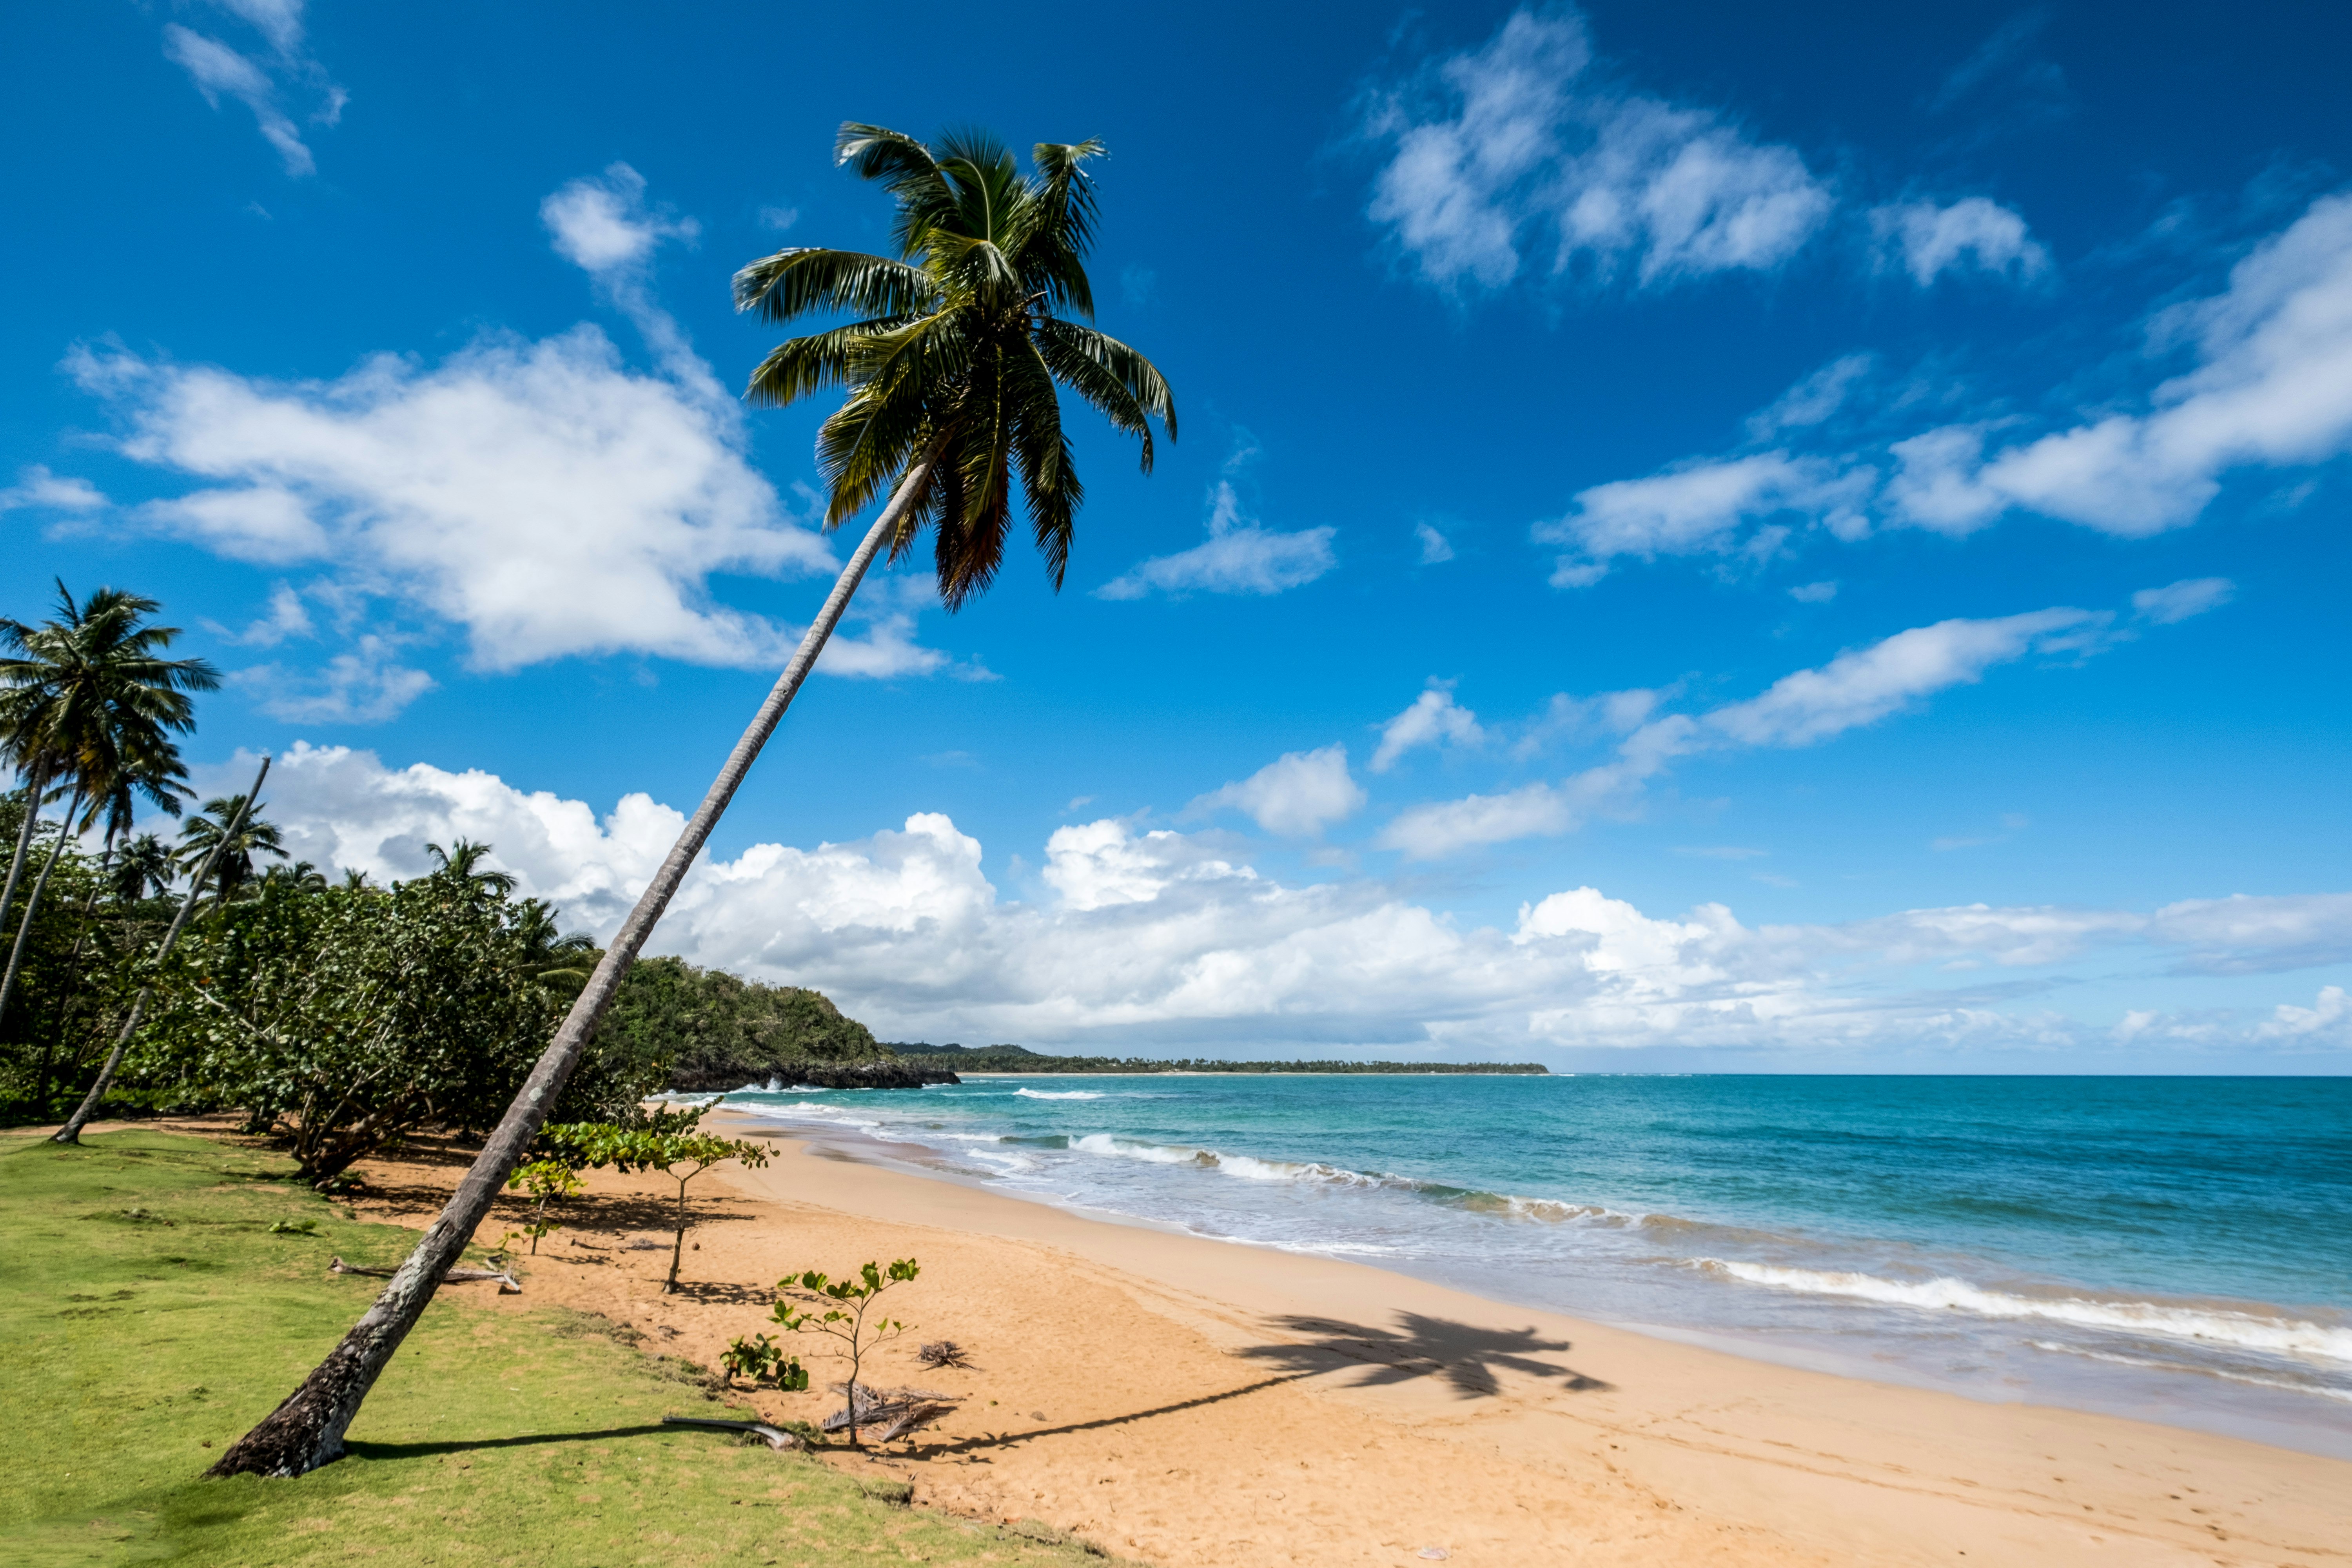 Playa Morón est une magnifique plage isolée aux eaux turquoise, au nord de la péninsule de Samaná, en République Dominicaine.